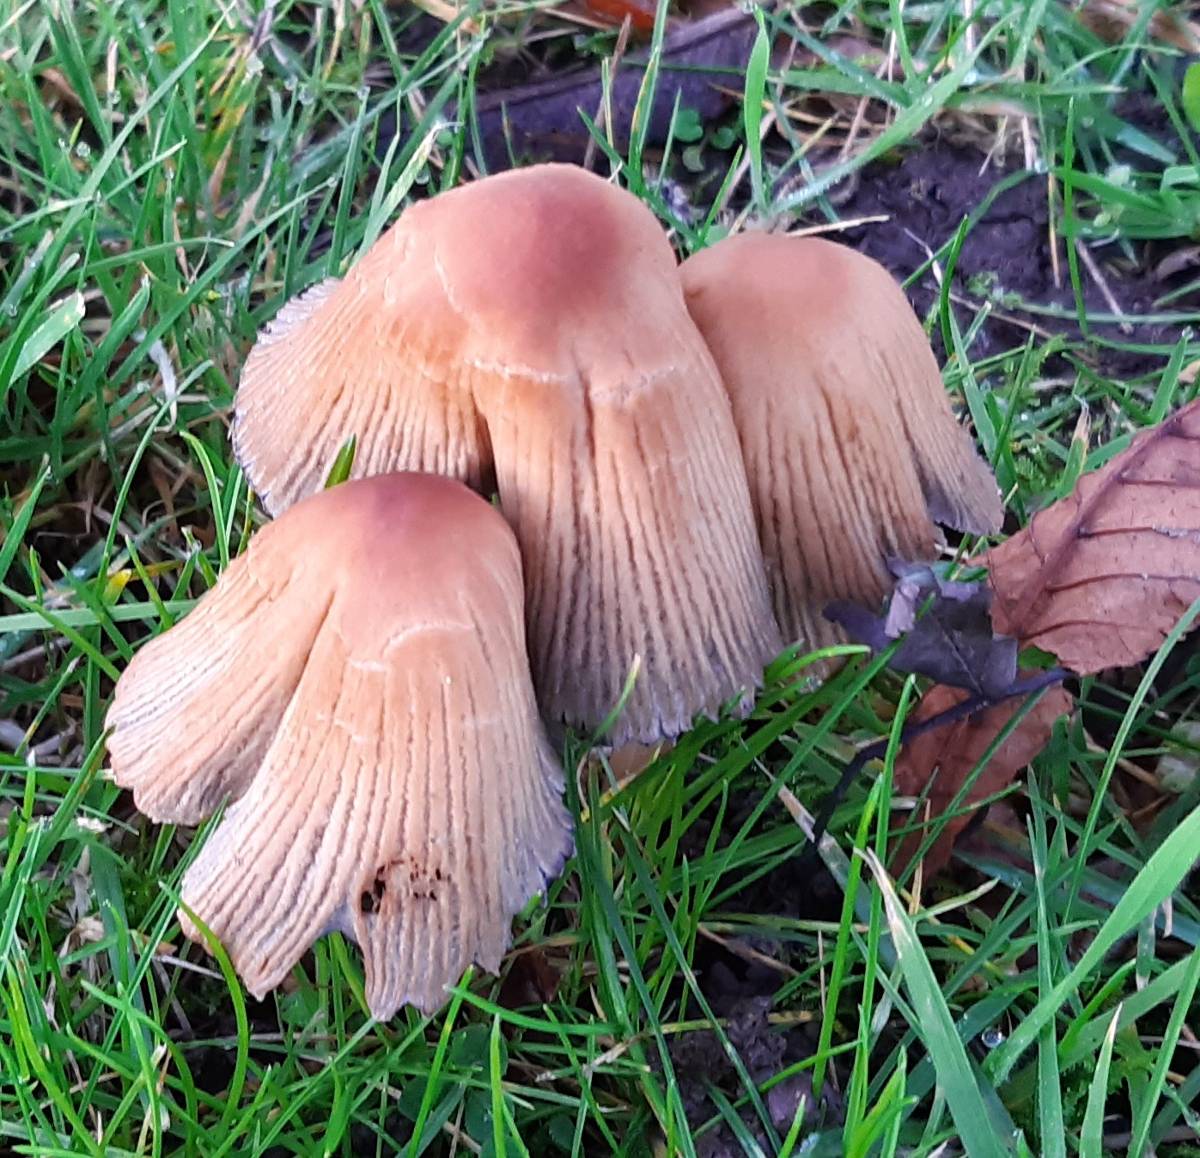 Mushrooms growing among grass (close up)